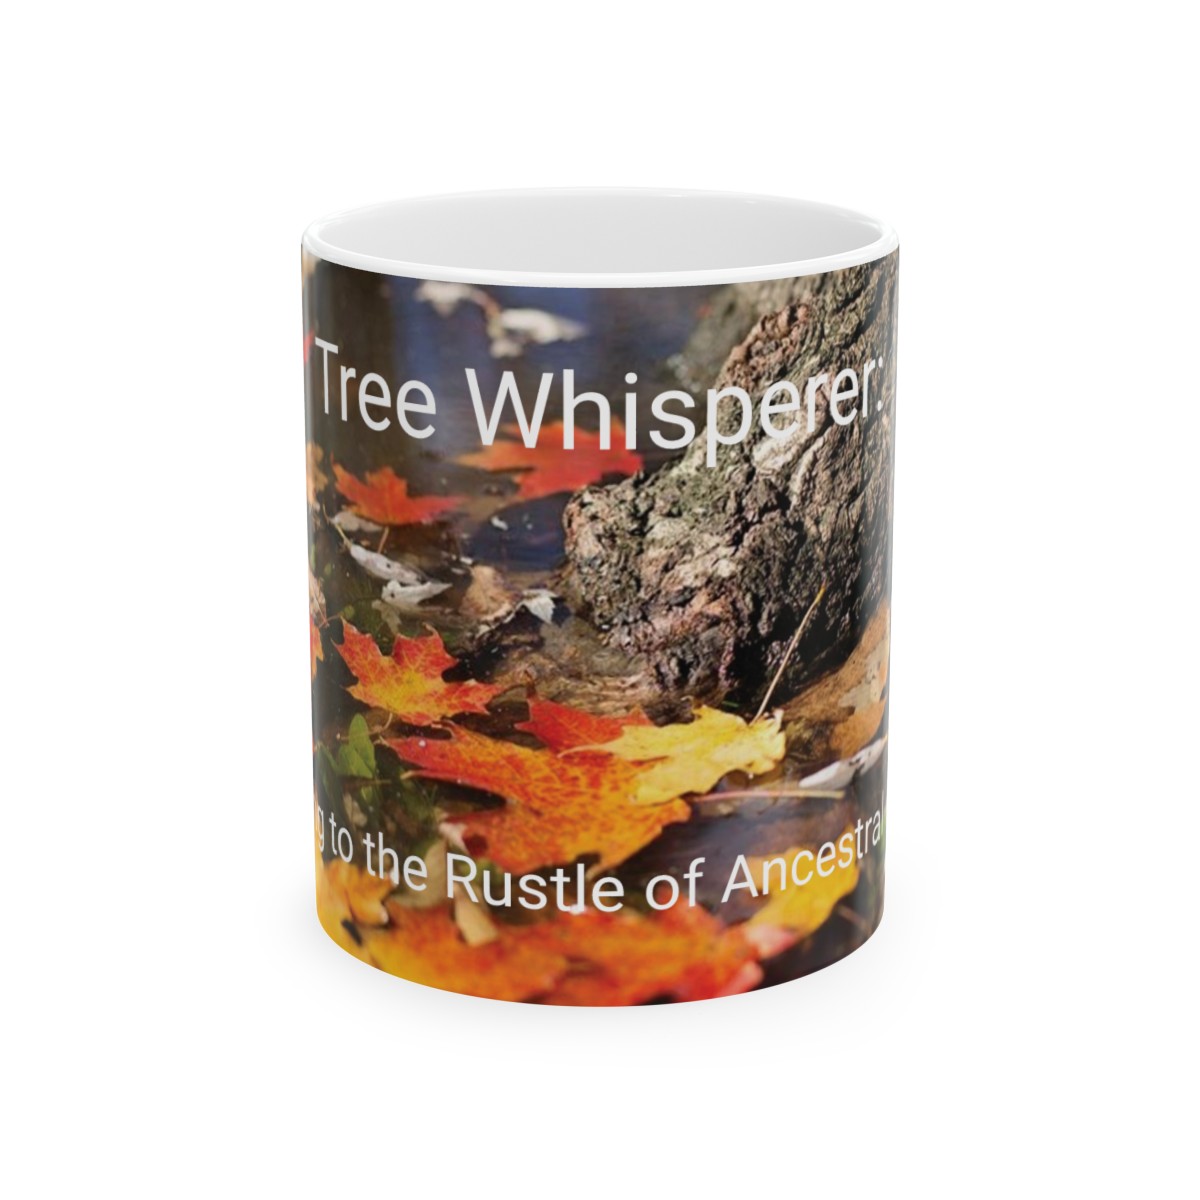 Tree Whisperer: Listening to the Rustle of Ancestral Leaves - Genealogy Ceramic Mug 11oz product thumbnail image